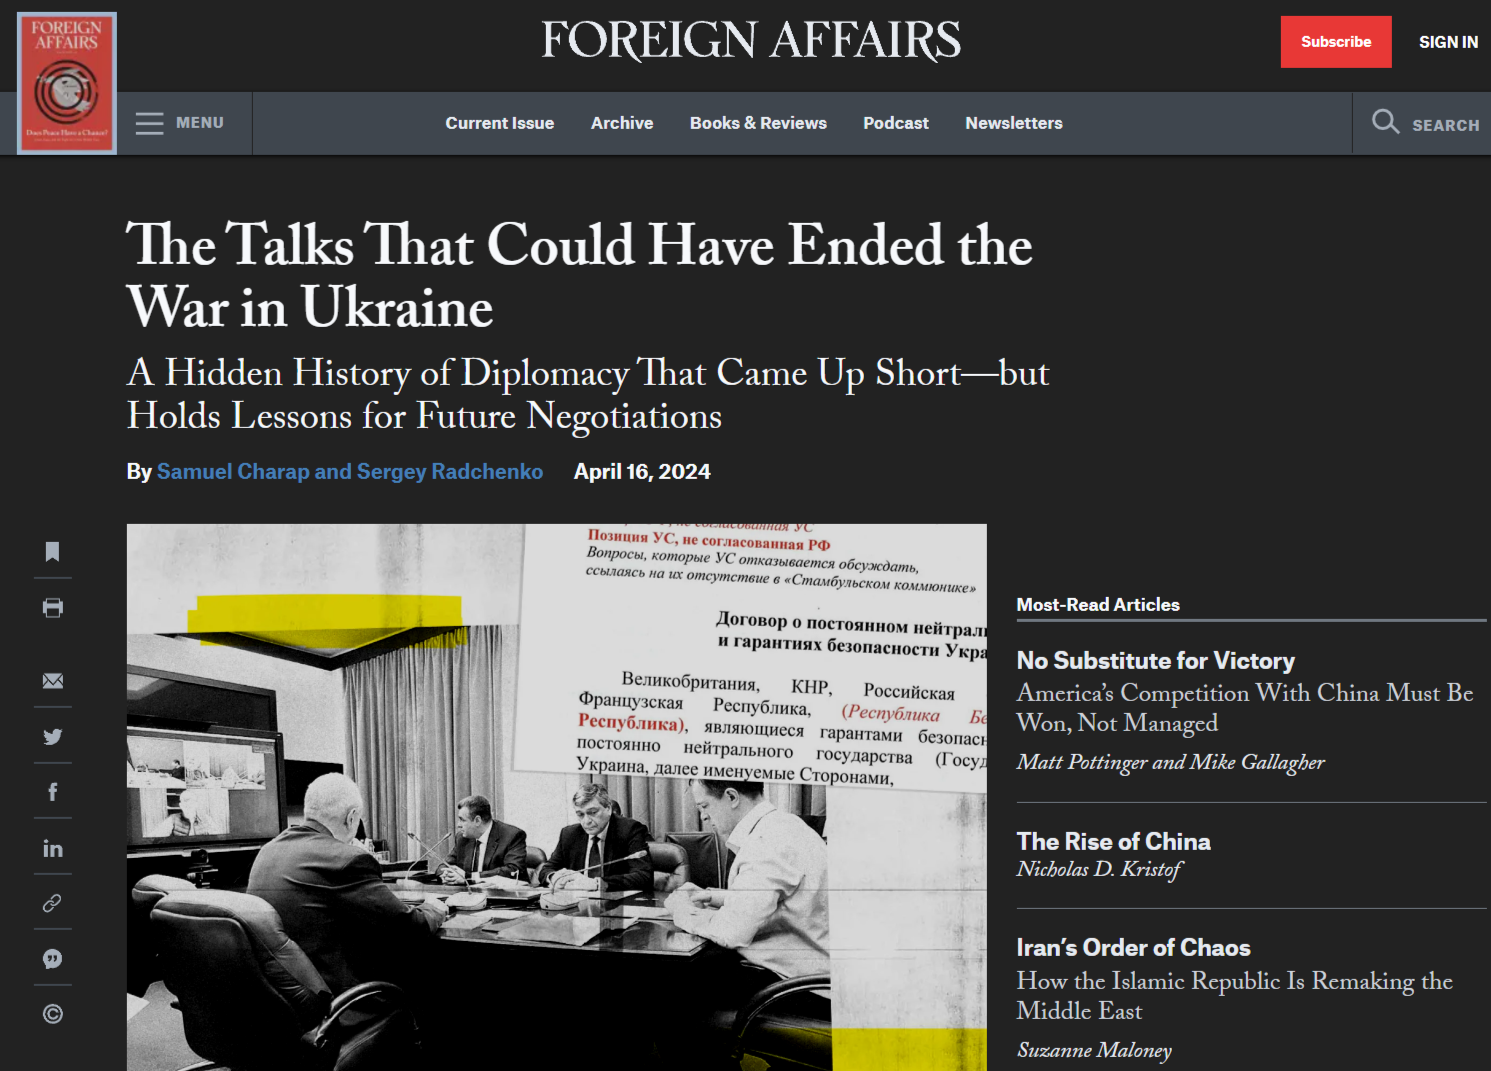 Foreign Affairs: Переговоры, которые могли бы положить конец войне на Украине